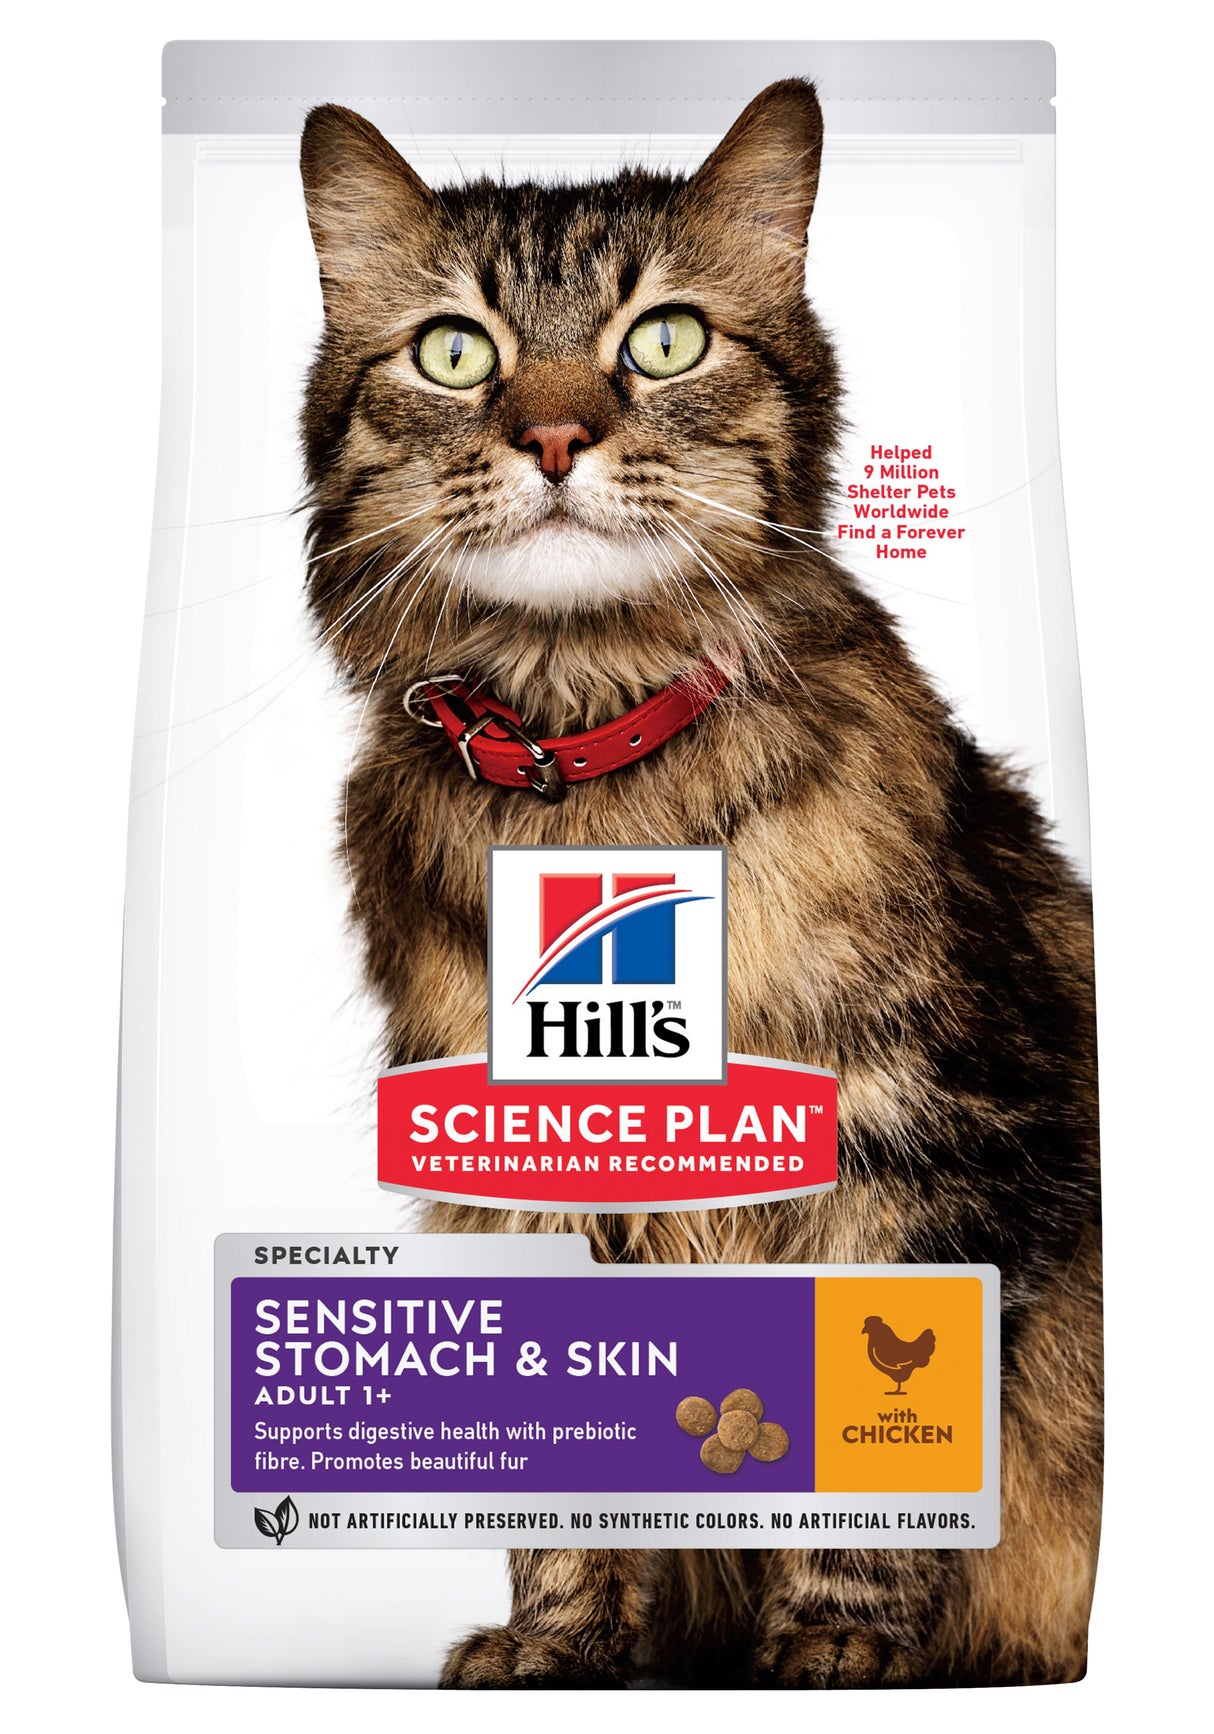 Hills Science Plan Feline Adult Sensitive Skin & Mave Kyllingetørfoder til katte med Omega-3 og Omega-6 vil blive erstattet med Hills sensitiv hud & mave, kattefoder m/ kylling (følsom hud & mave) 1,5 kg.